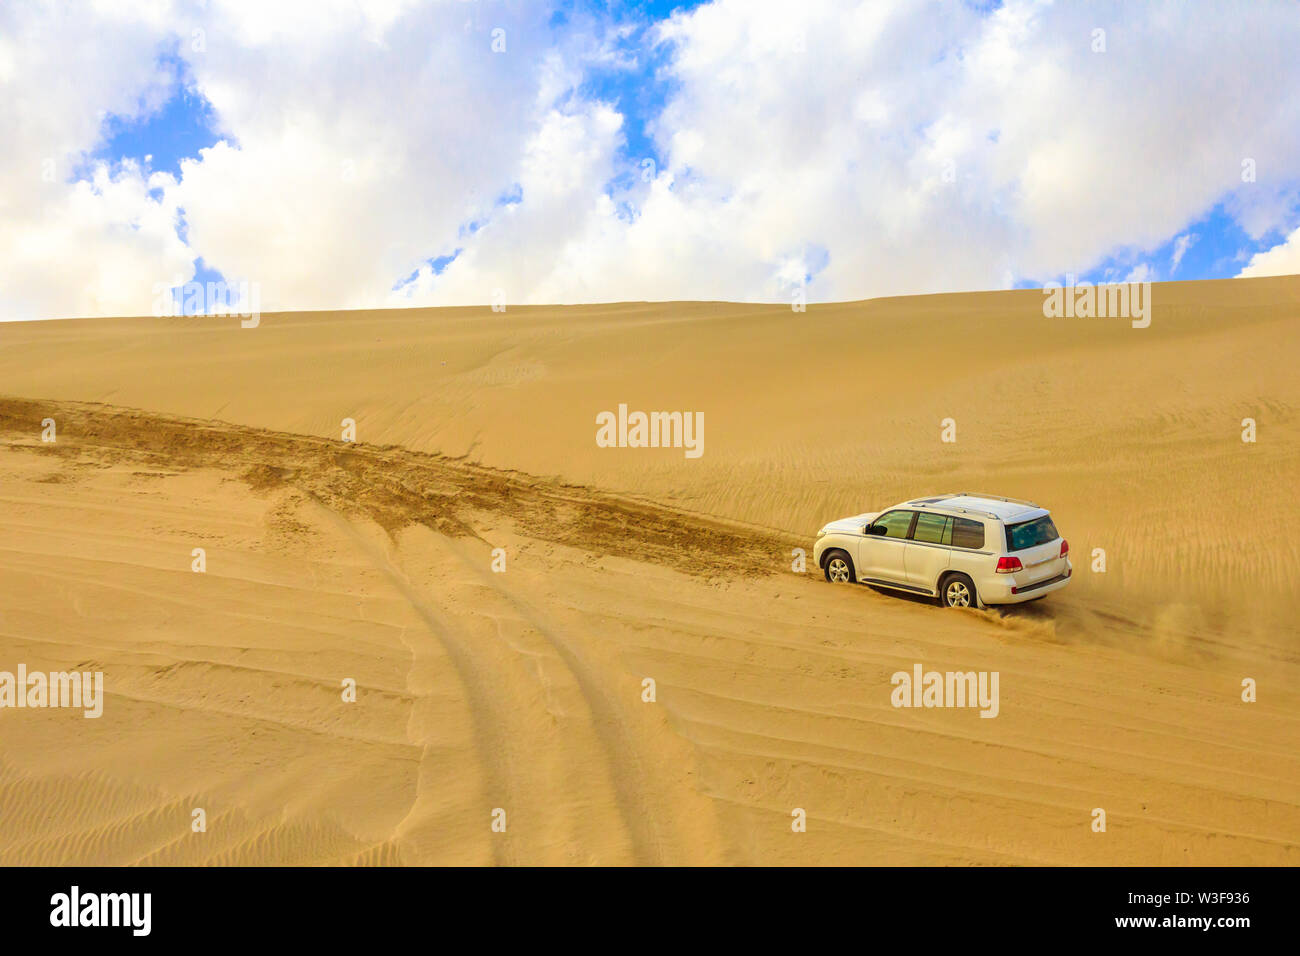 Khor al Udaid, Qatar - Febbraio 19, 2019: avventura fuori strada con Toyota Land Cruiser nel deserto Arabico. 4x4wd dune bashing in Inland Sea Foto Stock